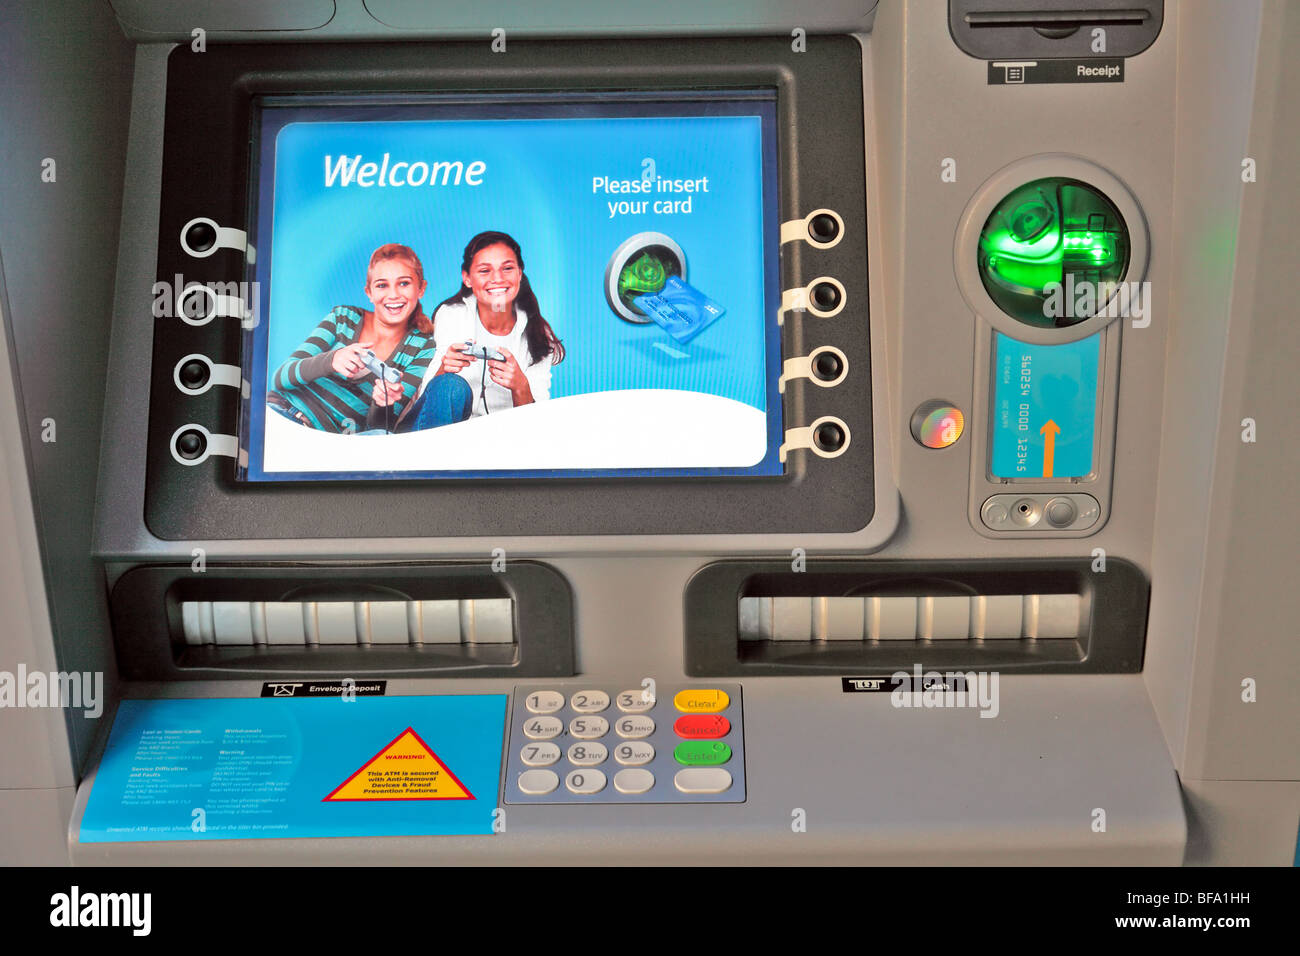 Bank-ATM Maschine Bildschirm und Tastatur Stockfoto